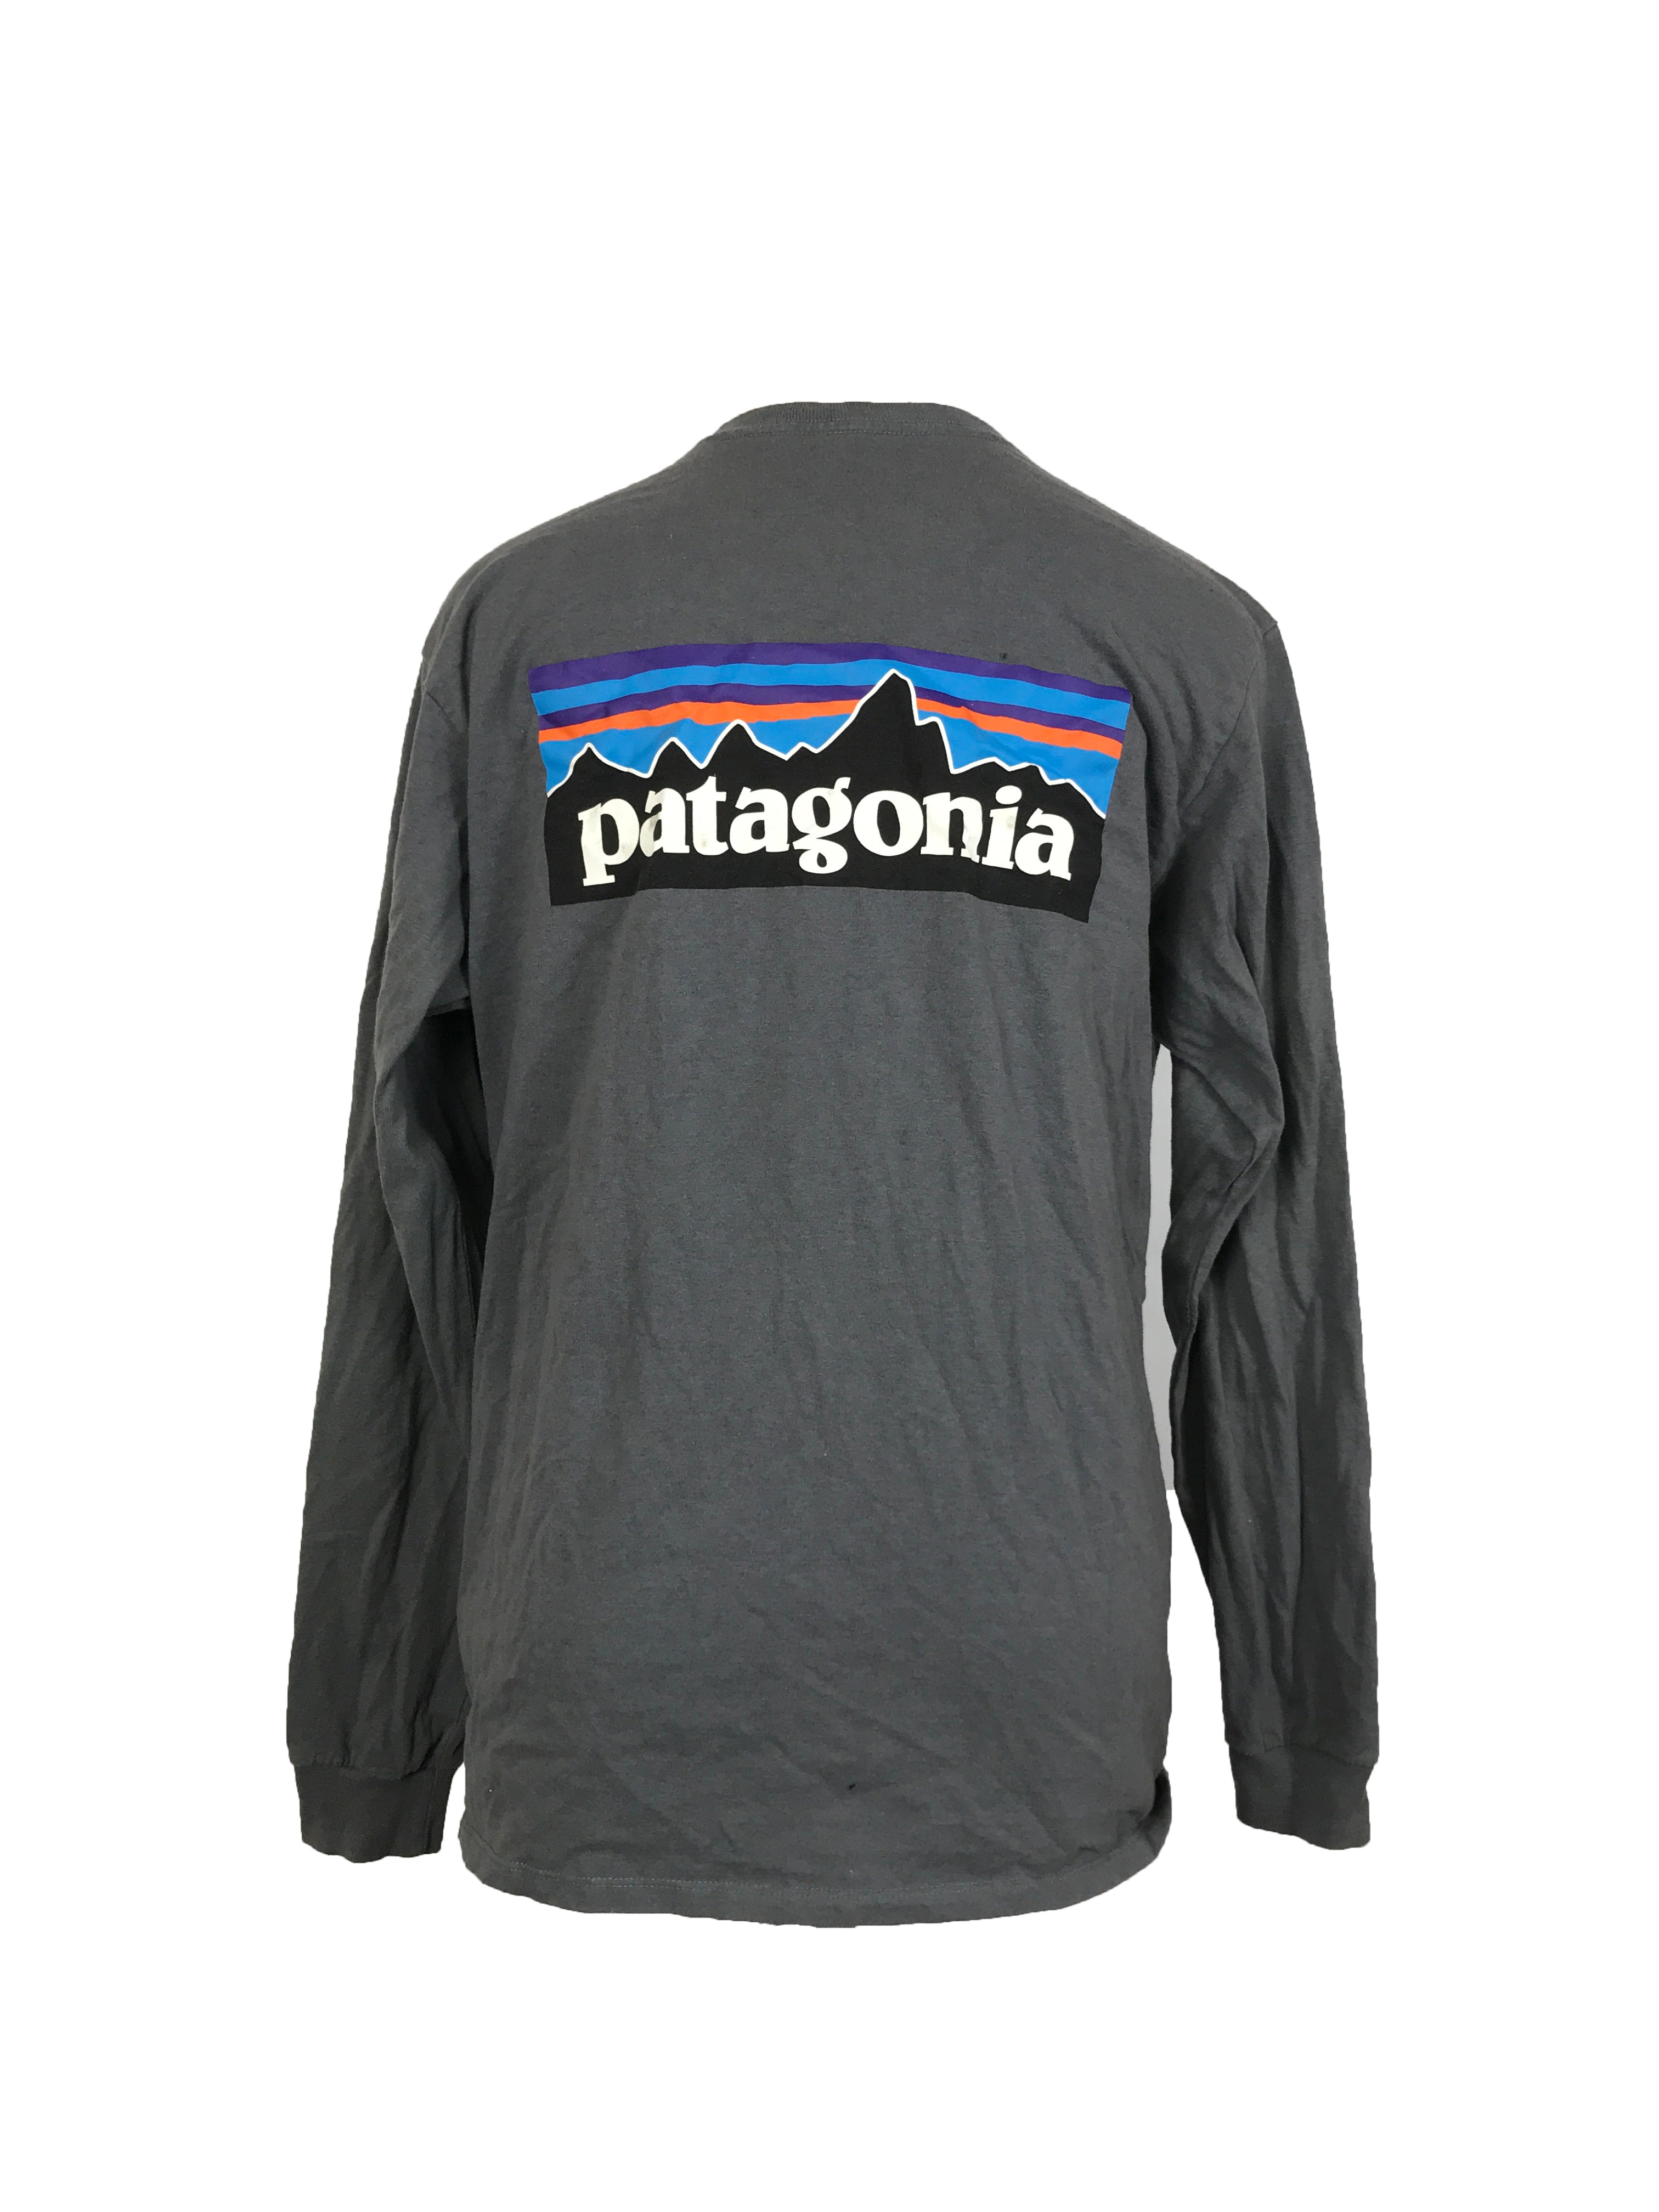 Patagonia Dark Grey Long Sleeve Shirt Men's Size M